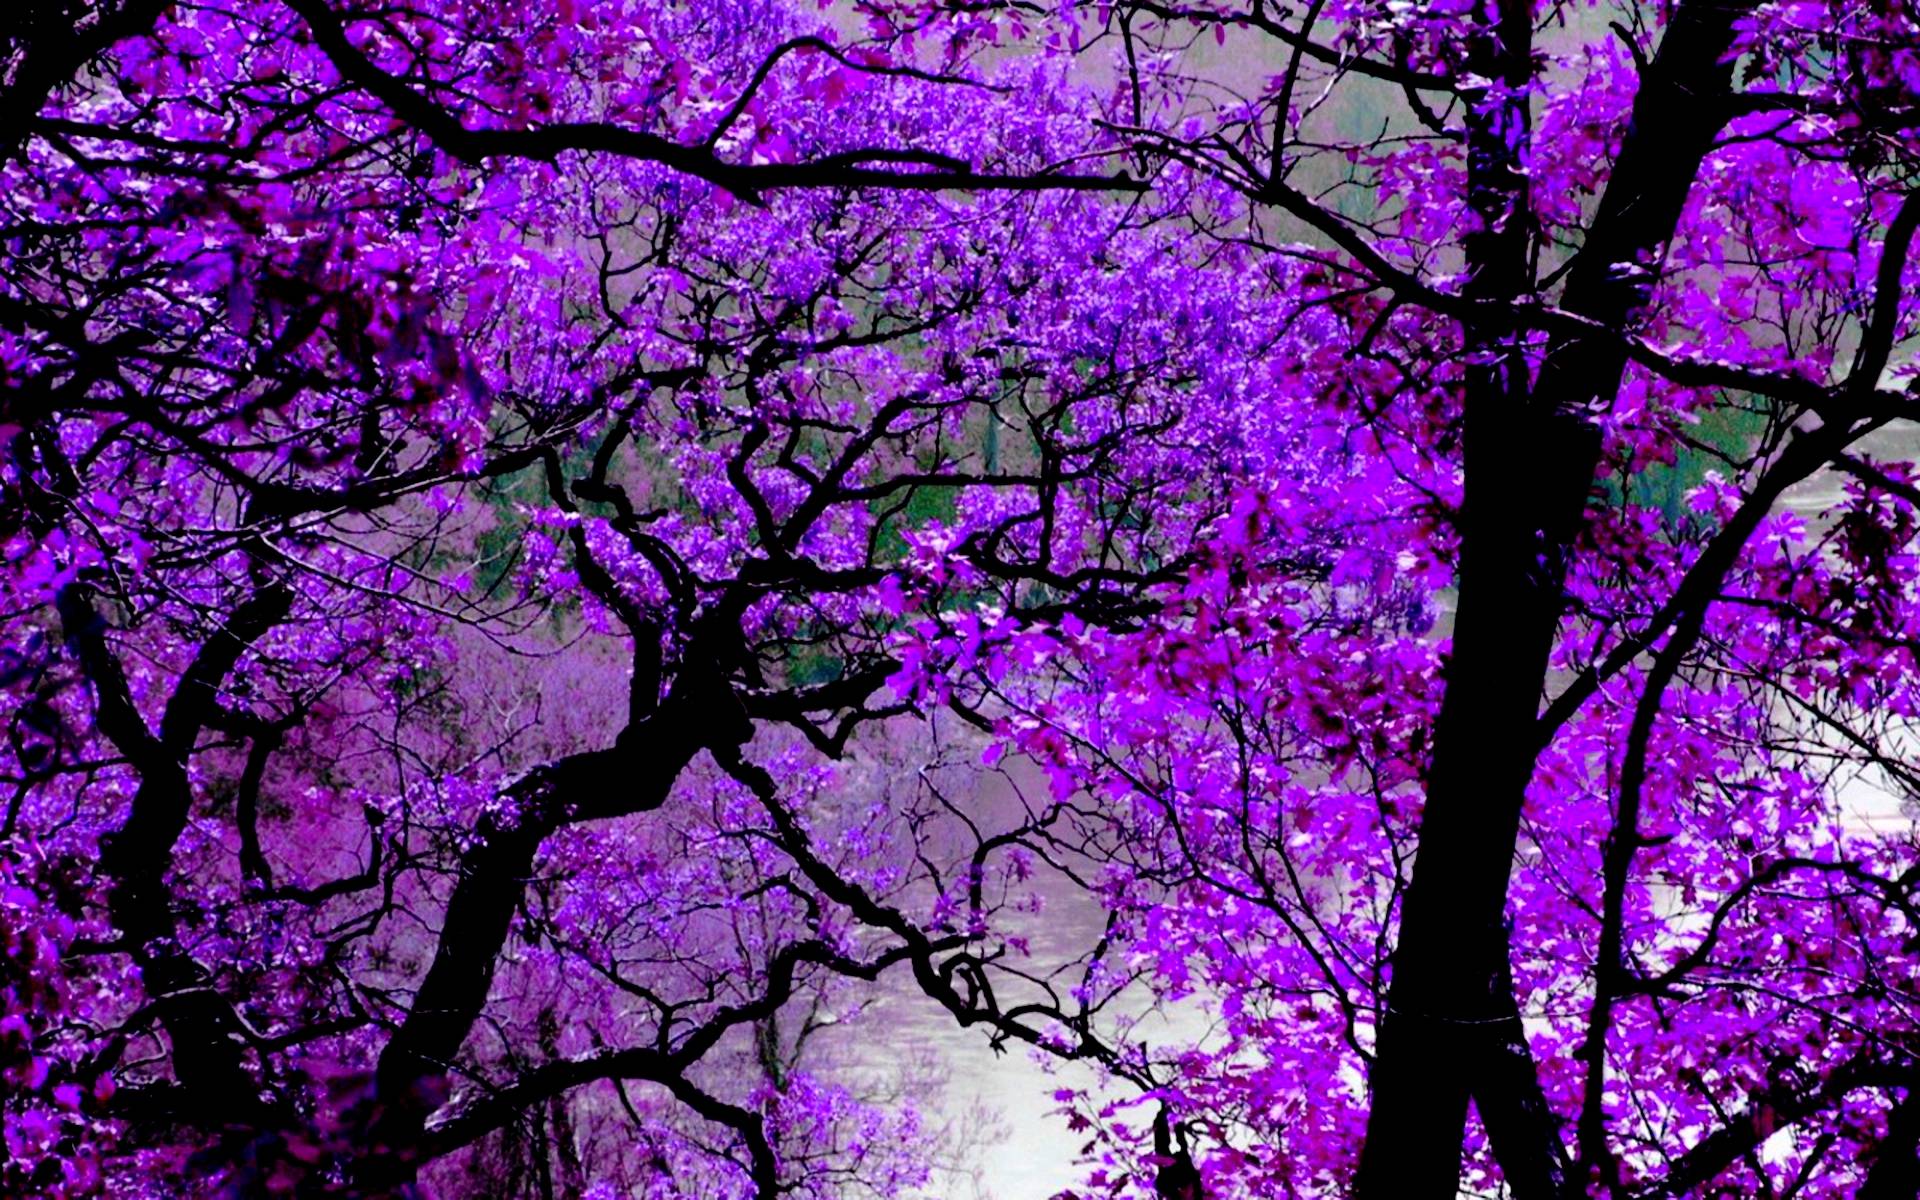 красивые картинки на телефон фиолетовый